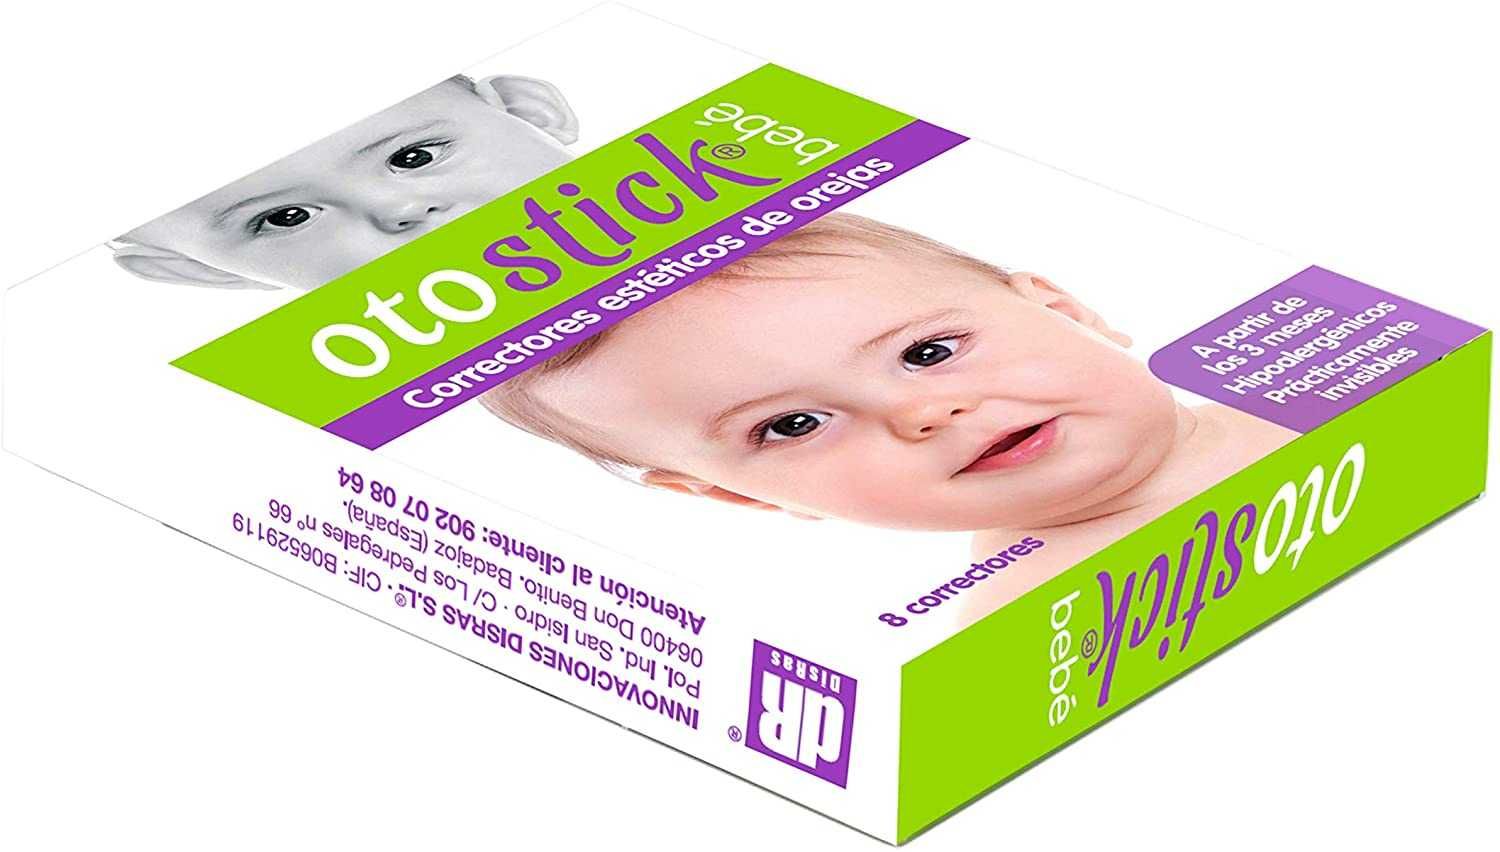 Otostick Baby устранения лопоухости у детей